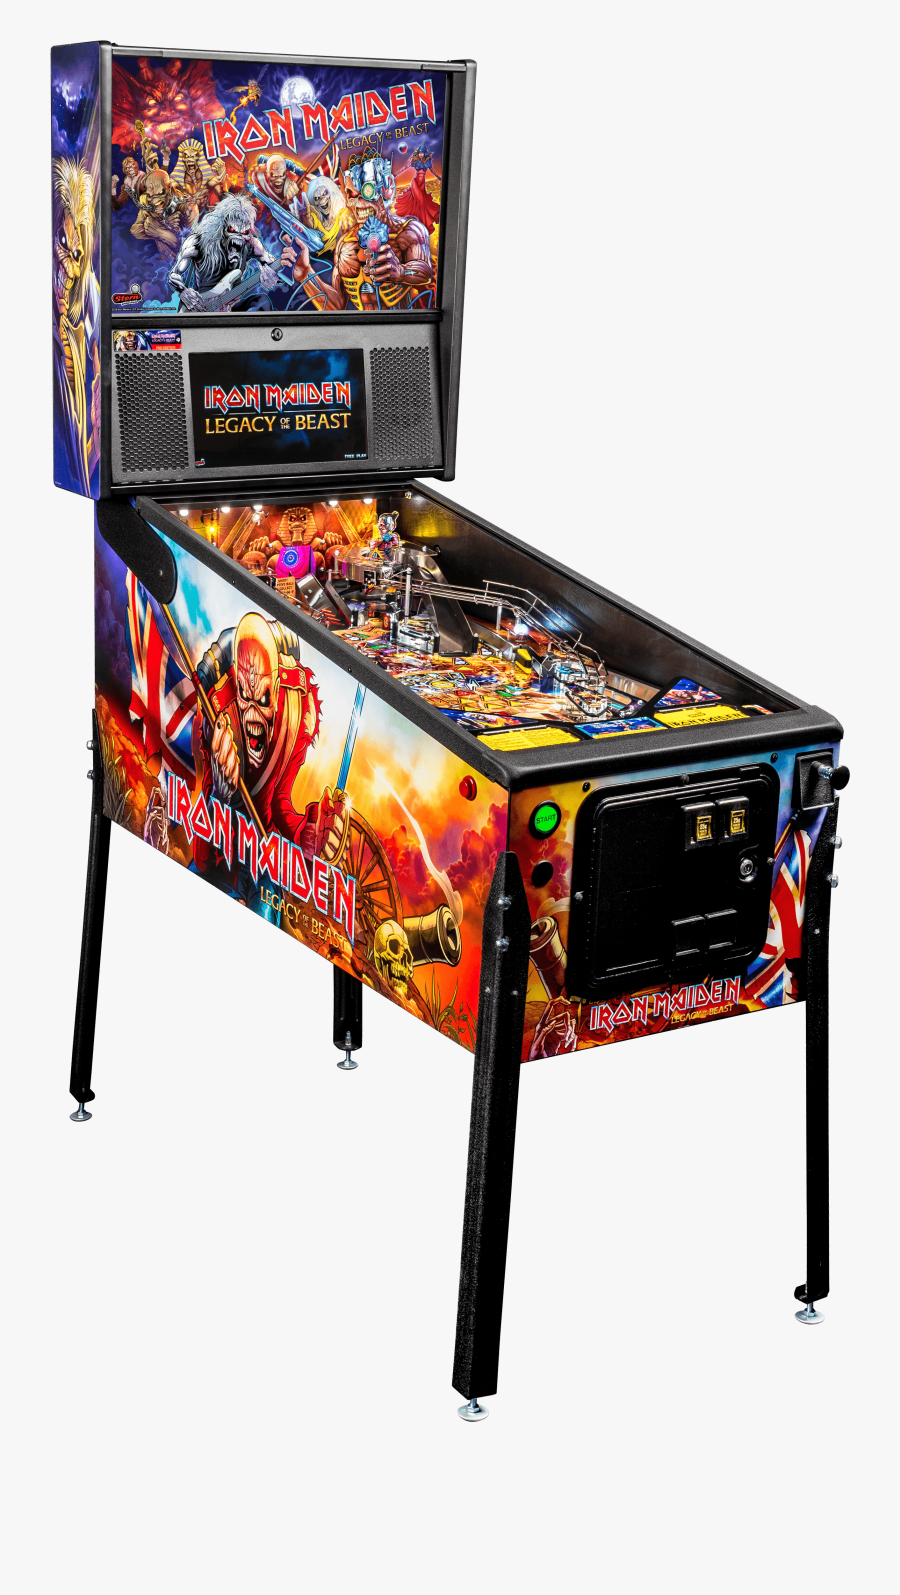 Buy Pro Pinball Machine By Stern Online - Stern Iron Maiden Premium, Transparent Clipart